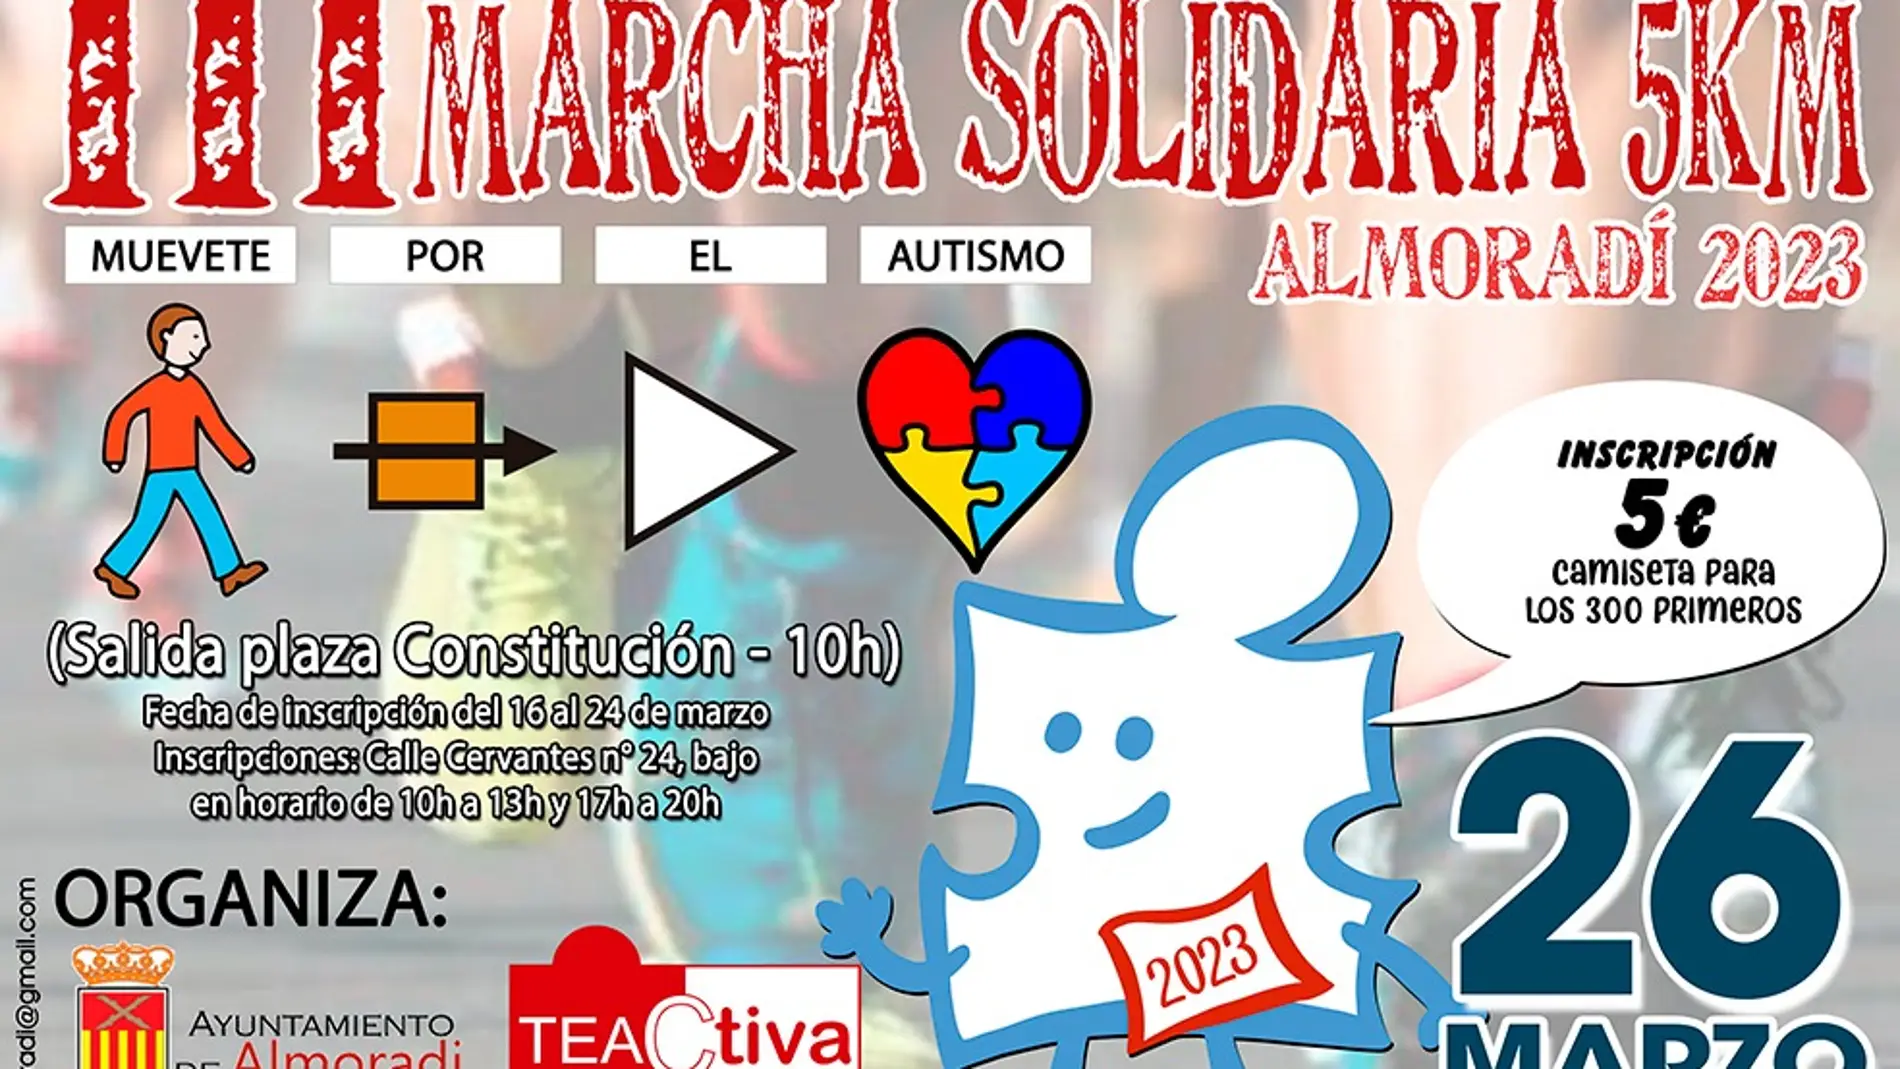 Almoradí presenta su III marcha solidaria en apoyo a la asociación de autismo 